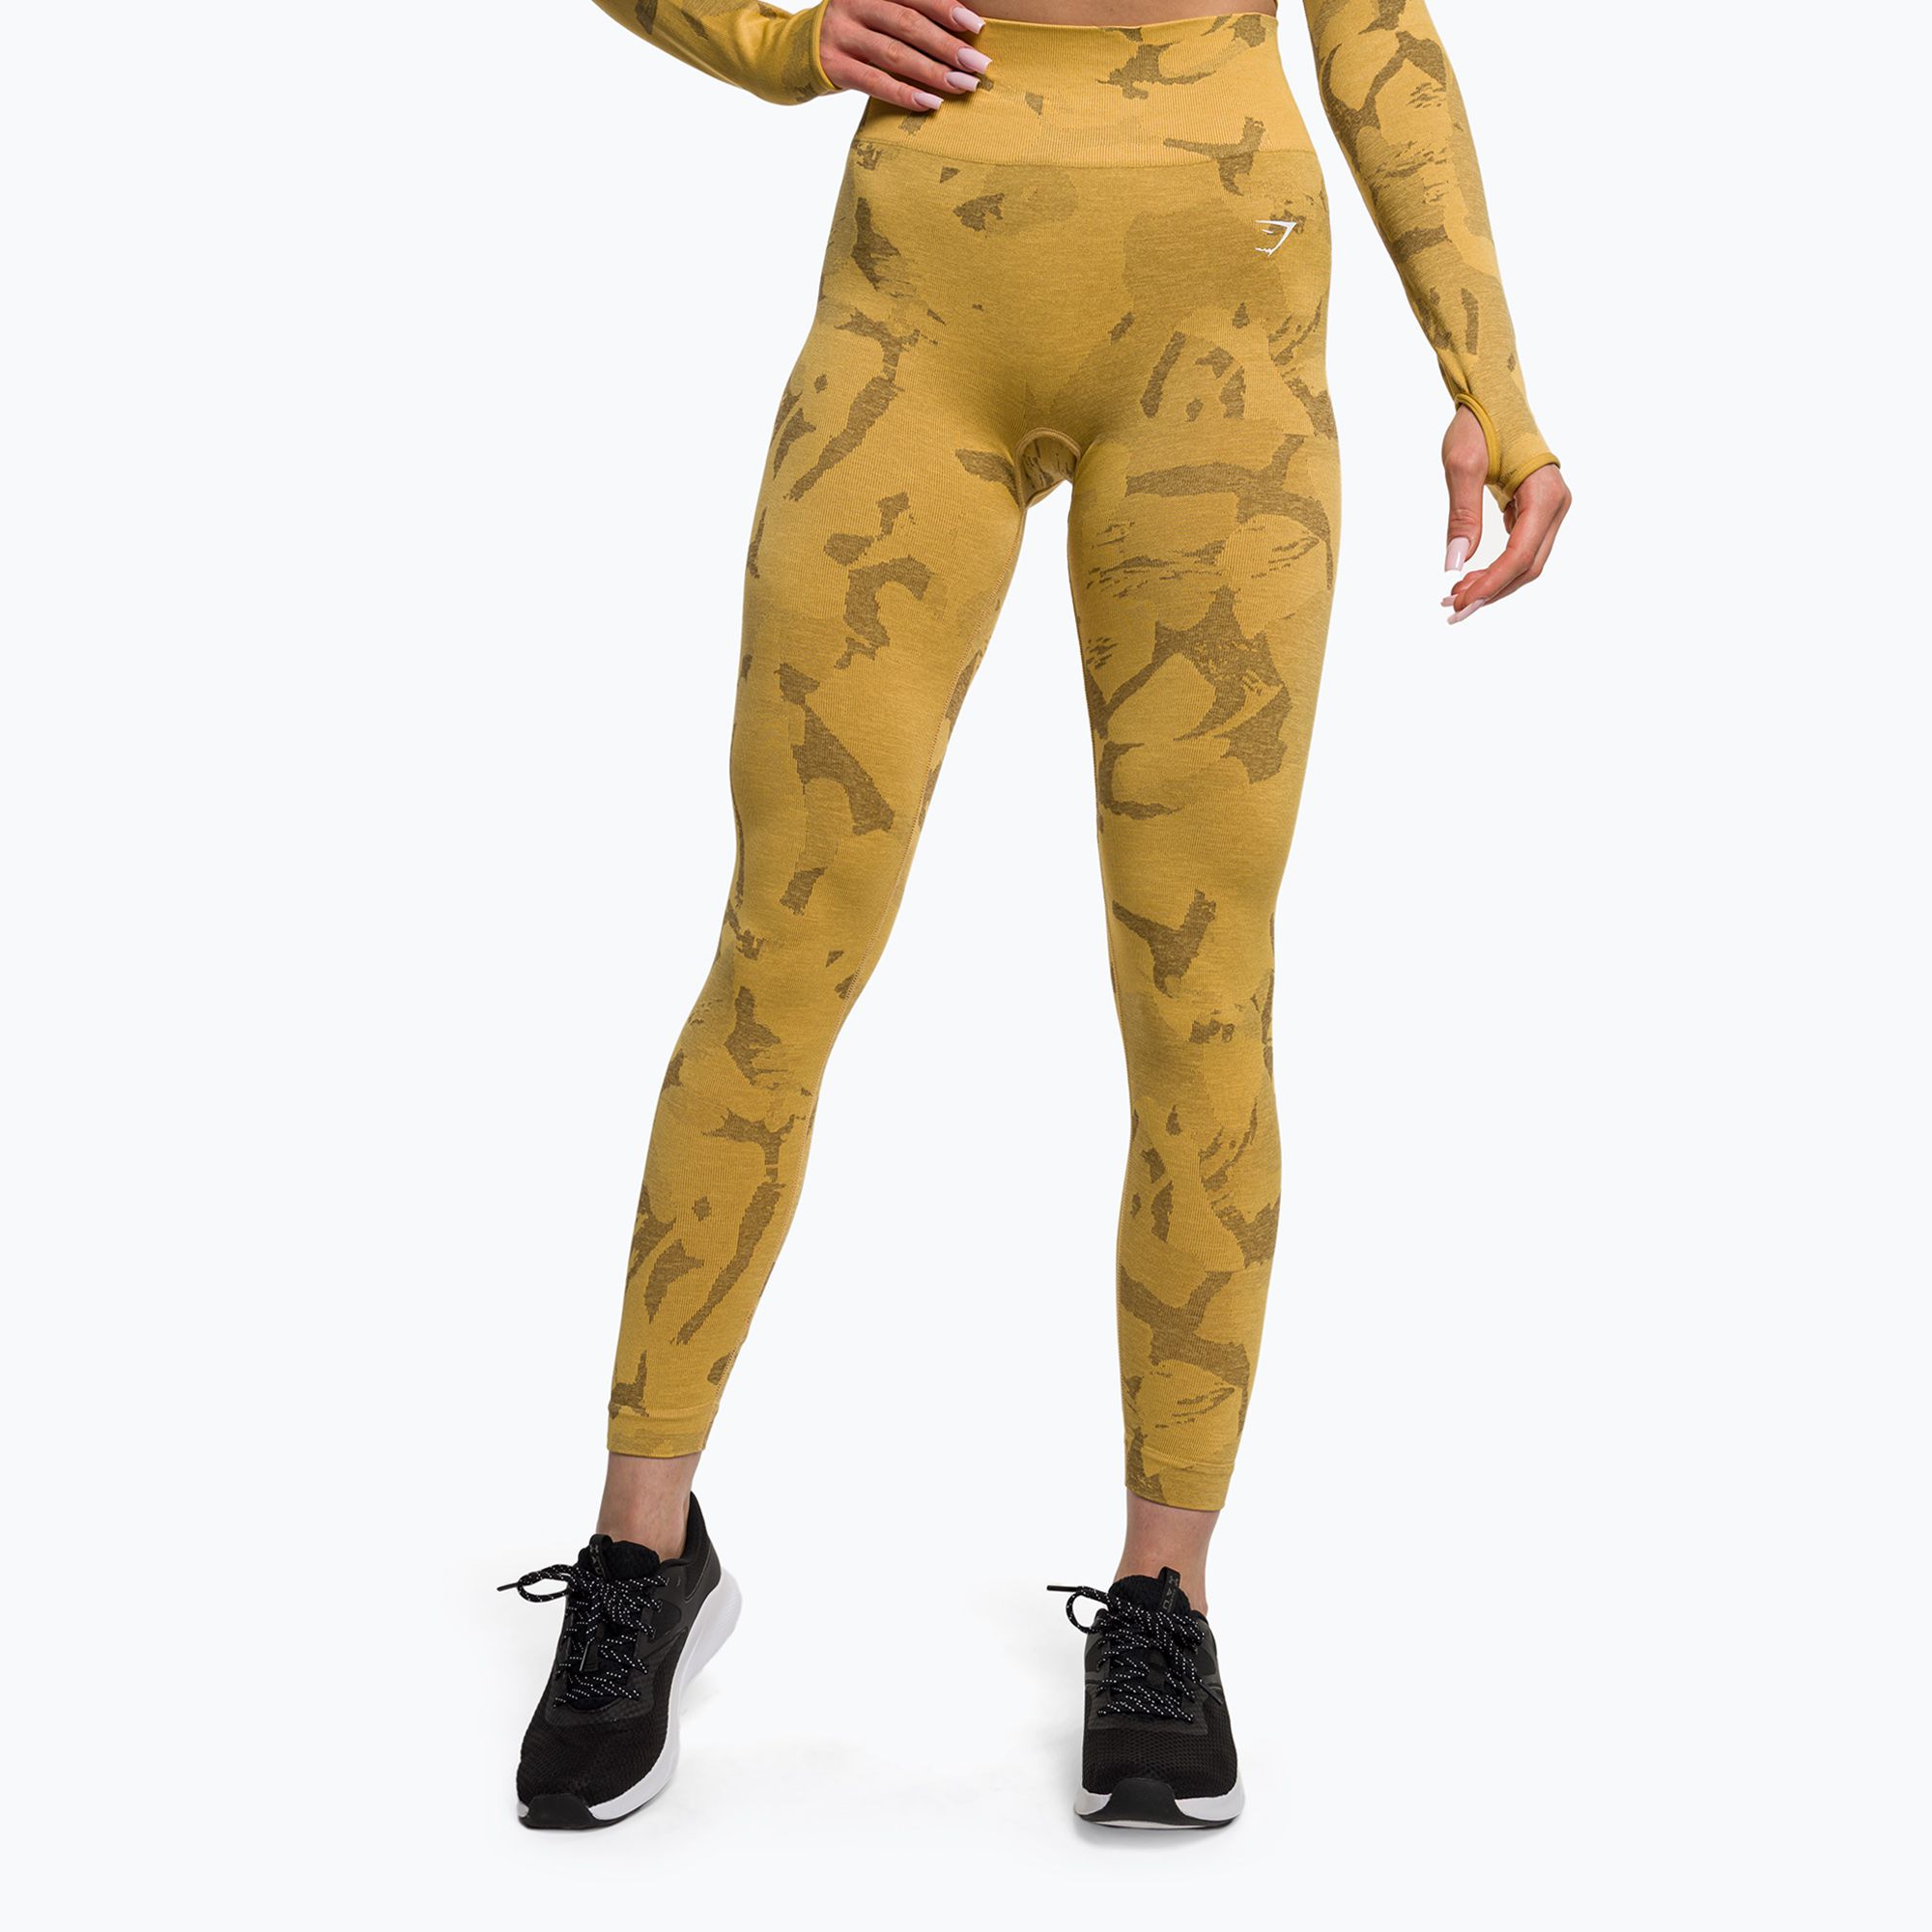 https://sportano.com/img/986c30c27a3d26a3ee16c136f92f4ff5/5/0/5057913507503_1-jpg/women-s-training-leggings-gymshark-adapt-camo-savanna-seamless-yellow-white-0.jpg